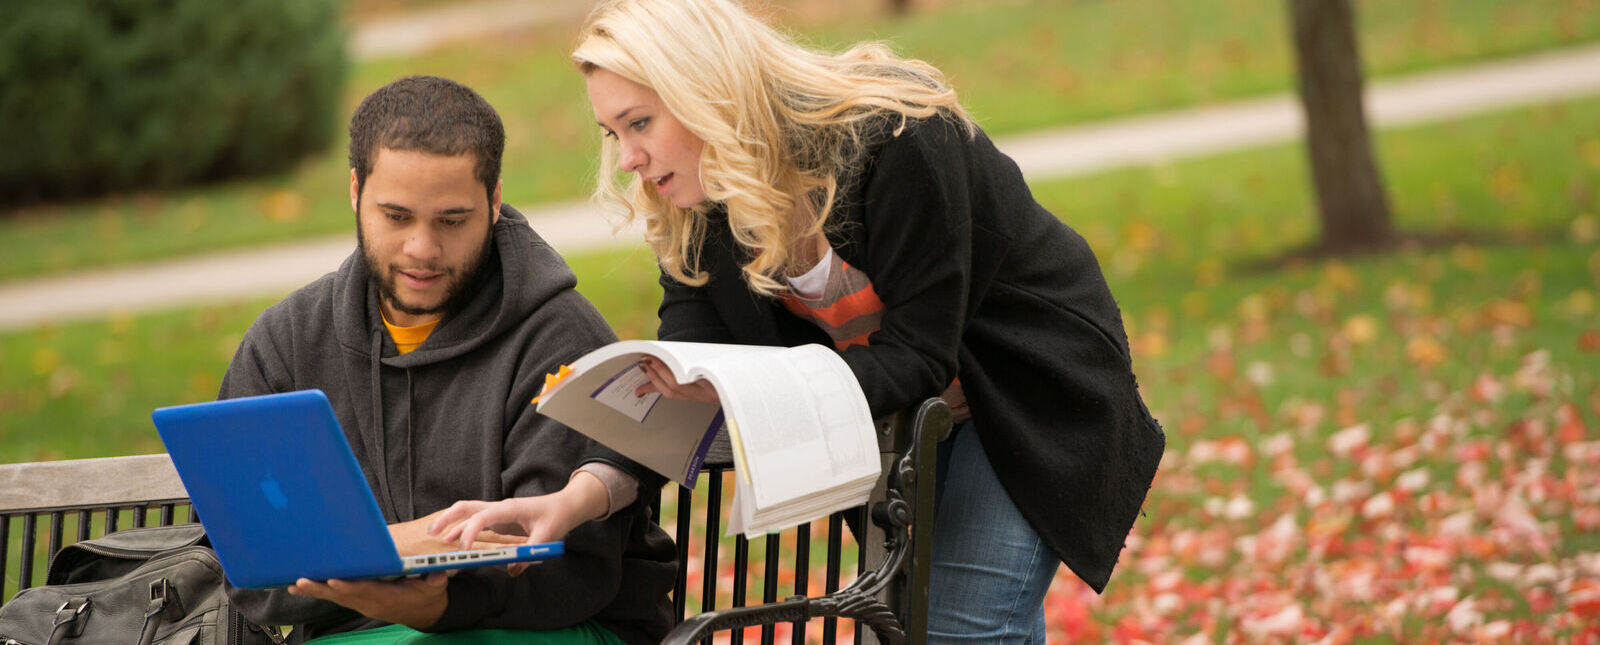 一名男学生和一名女学生一起坐在被秋叶包围的长凳上工作